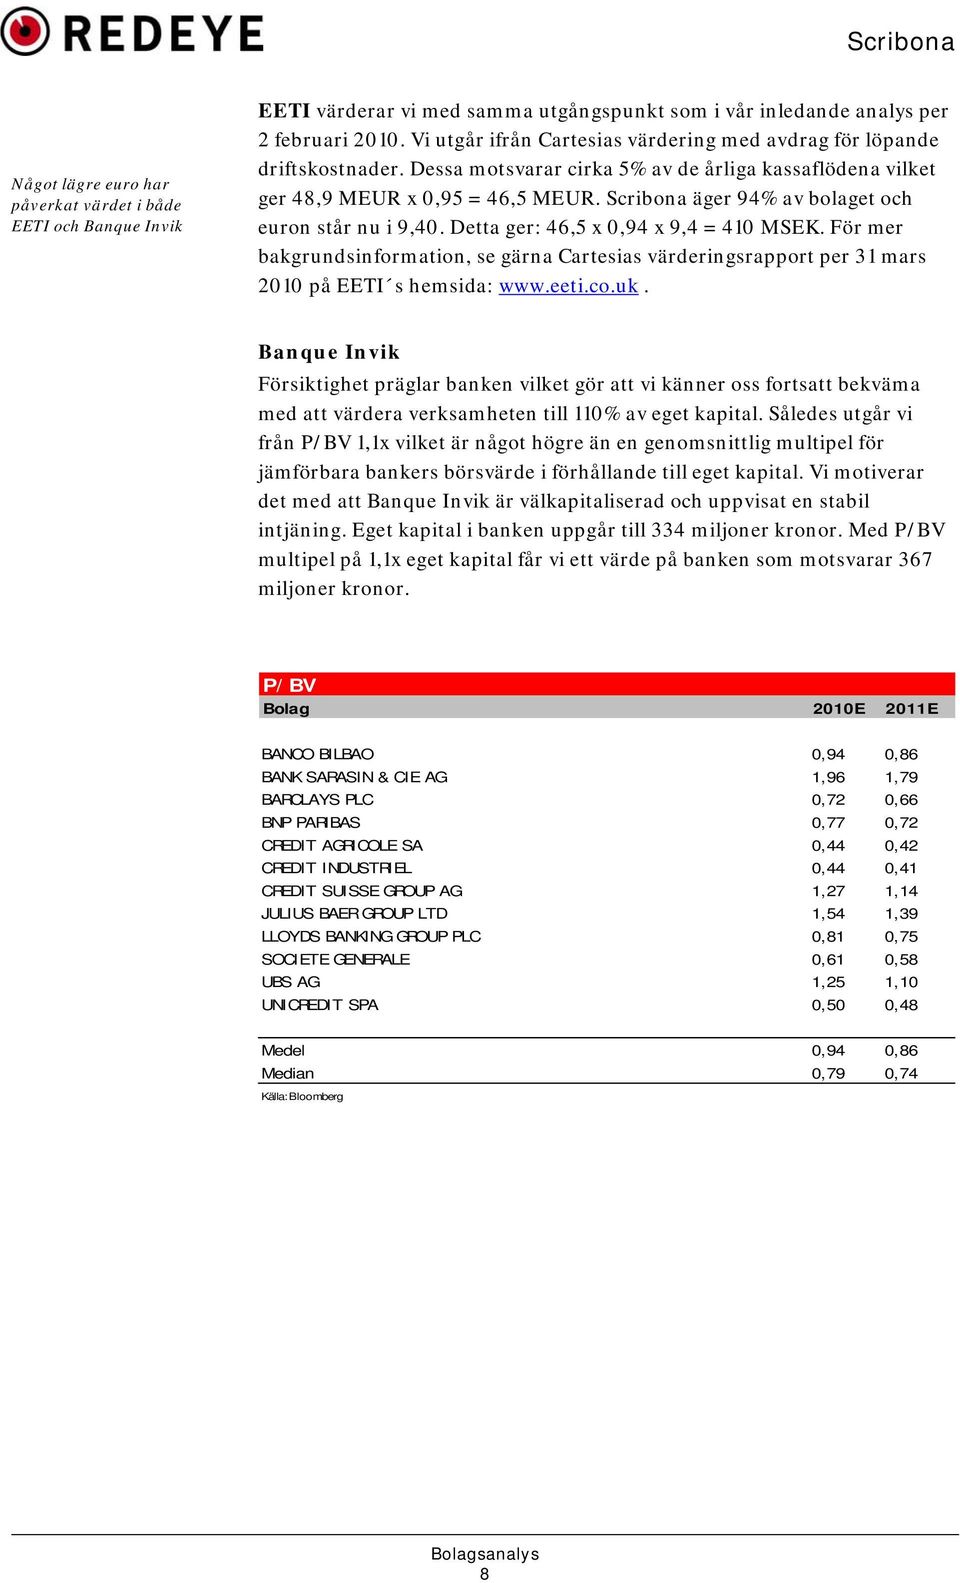 Scribona äger 94% av bolaget och euron står nu i 9,40. Detta ger: 46,5 x 0,94 x 9,4 = 410 MSEK.